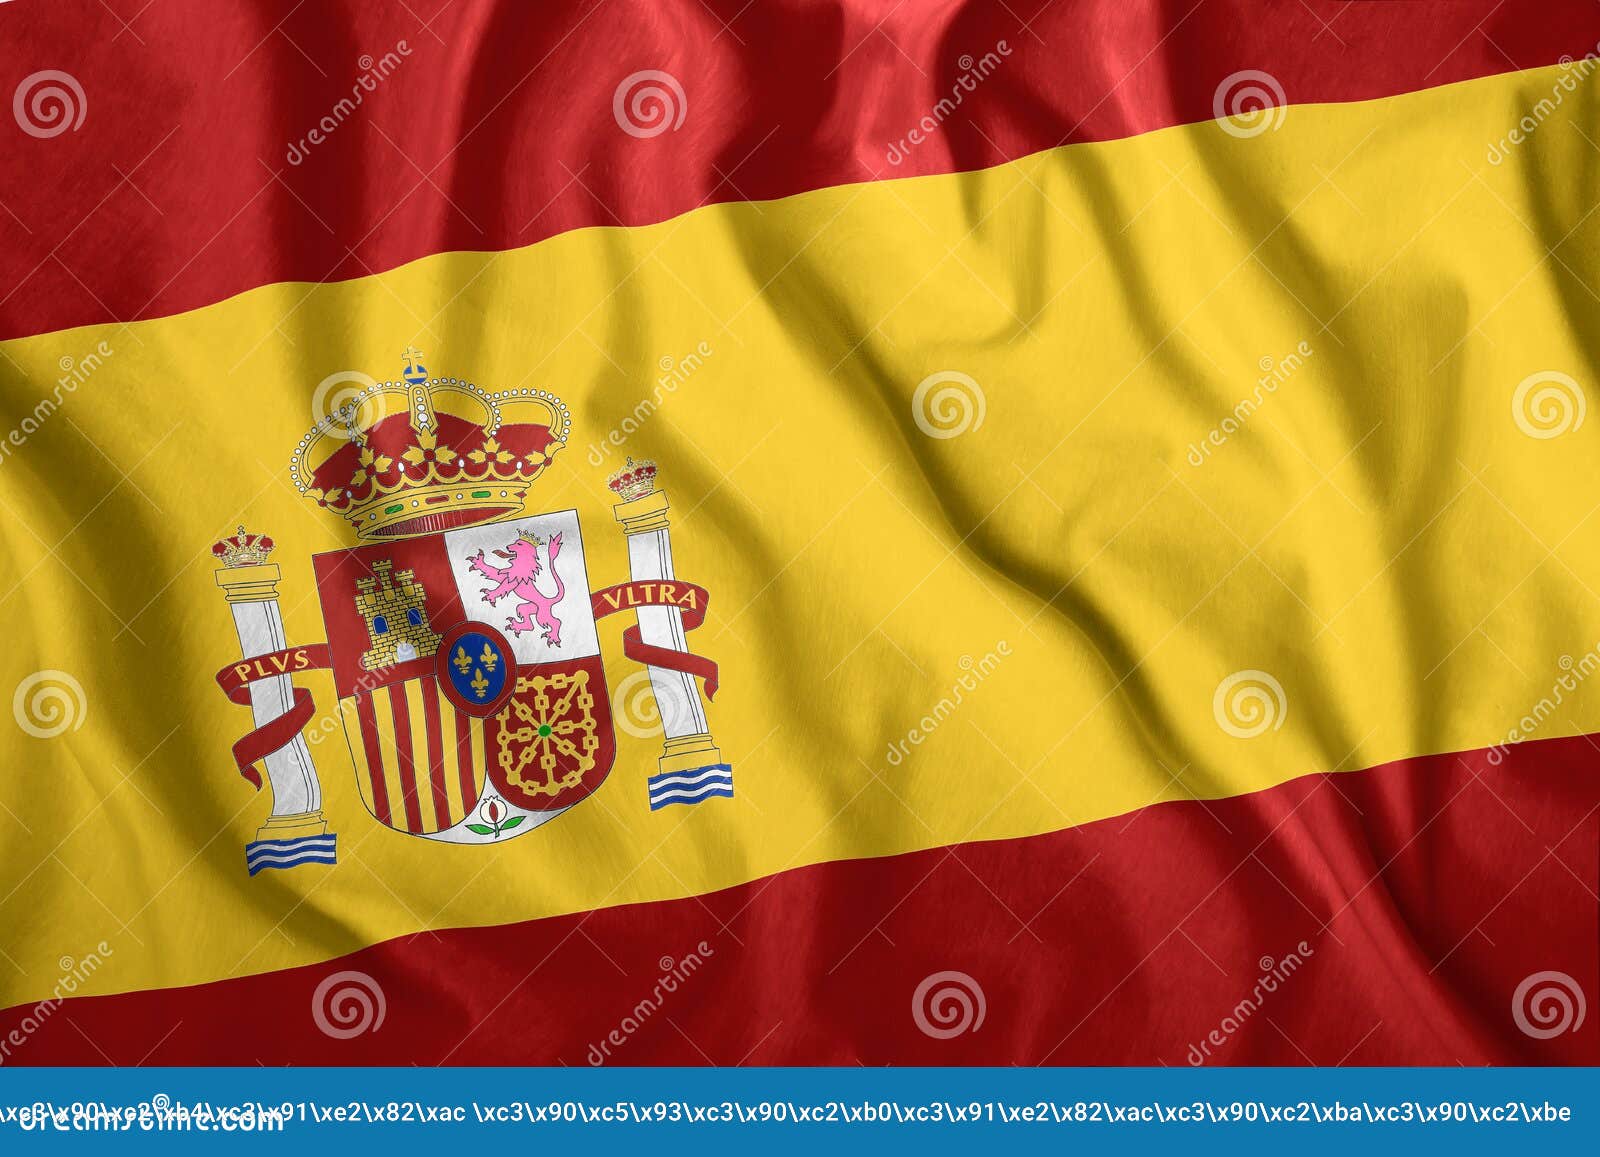 Испанский Флаг Фото Картинки